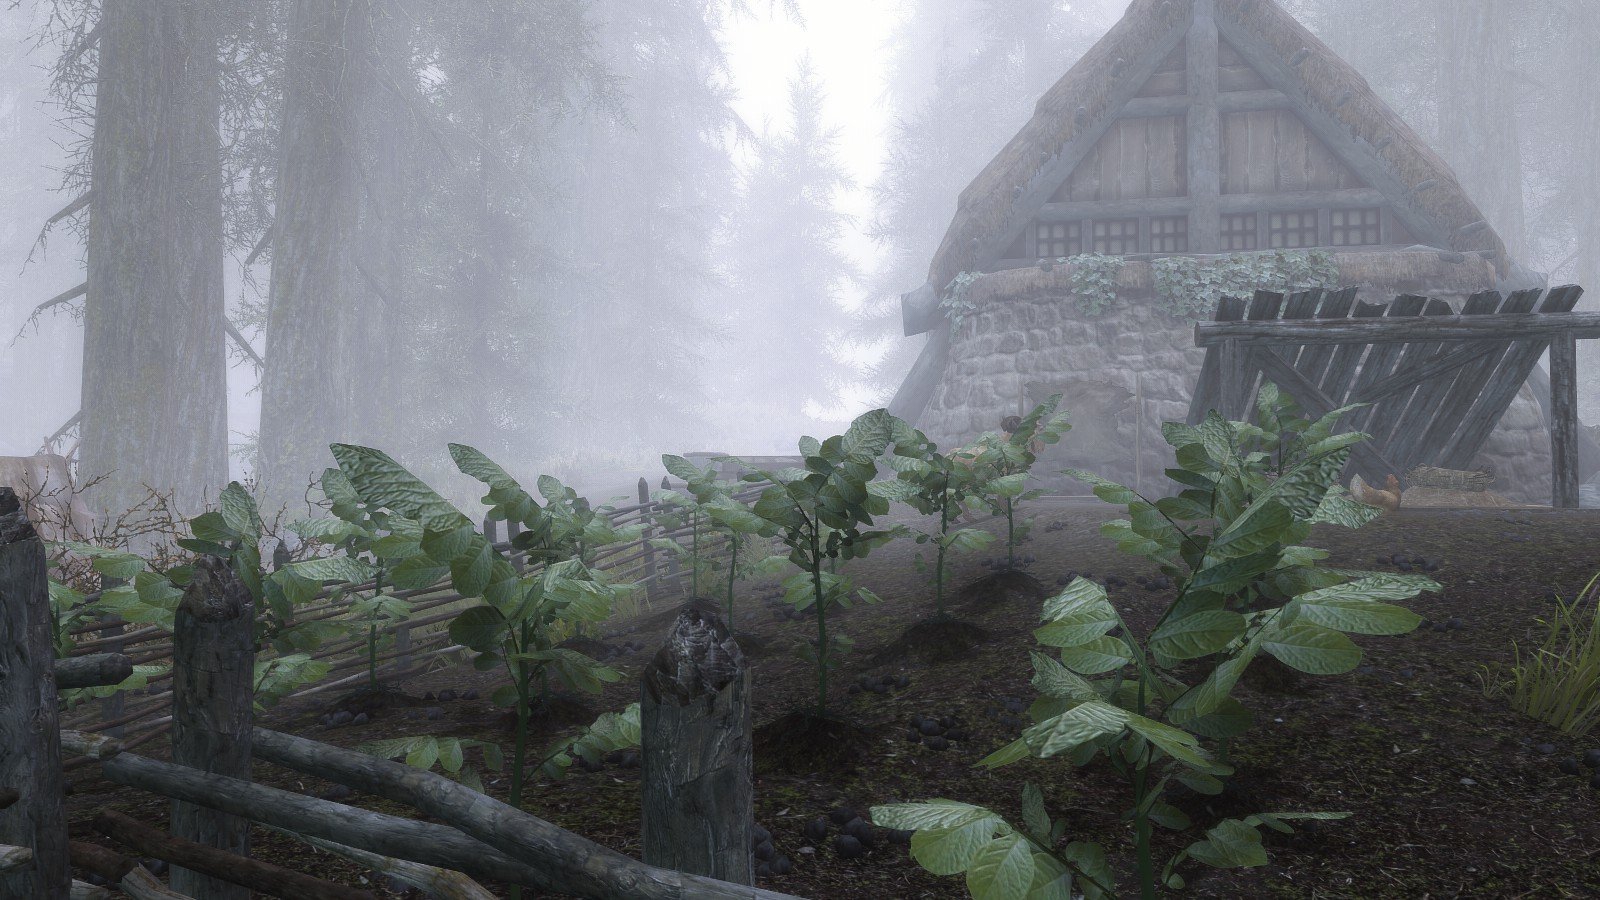 The Elder Scrolls V: Skyrim, Environment, Farm, Mist, Forest Wallpaper